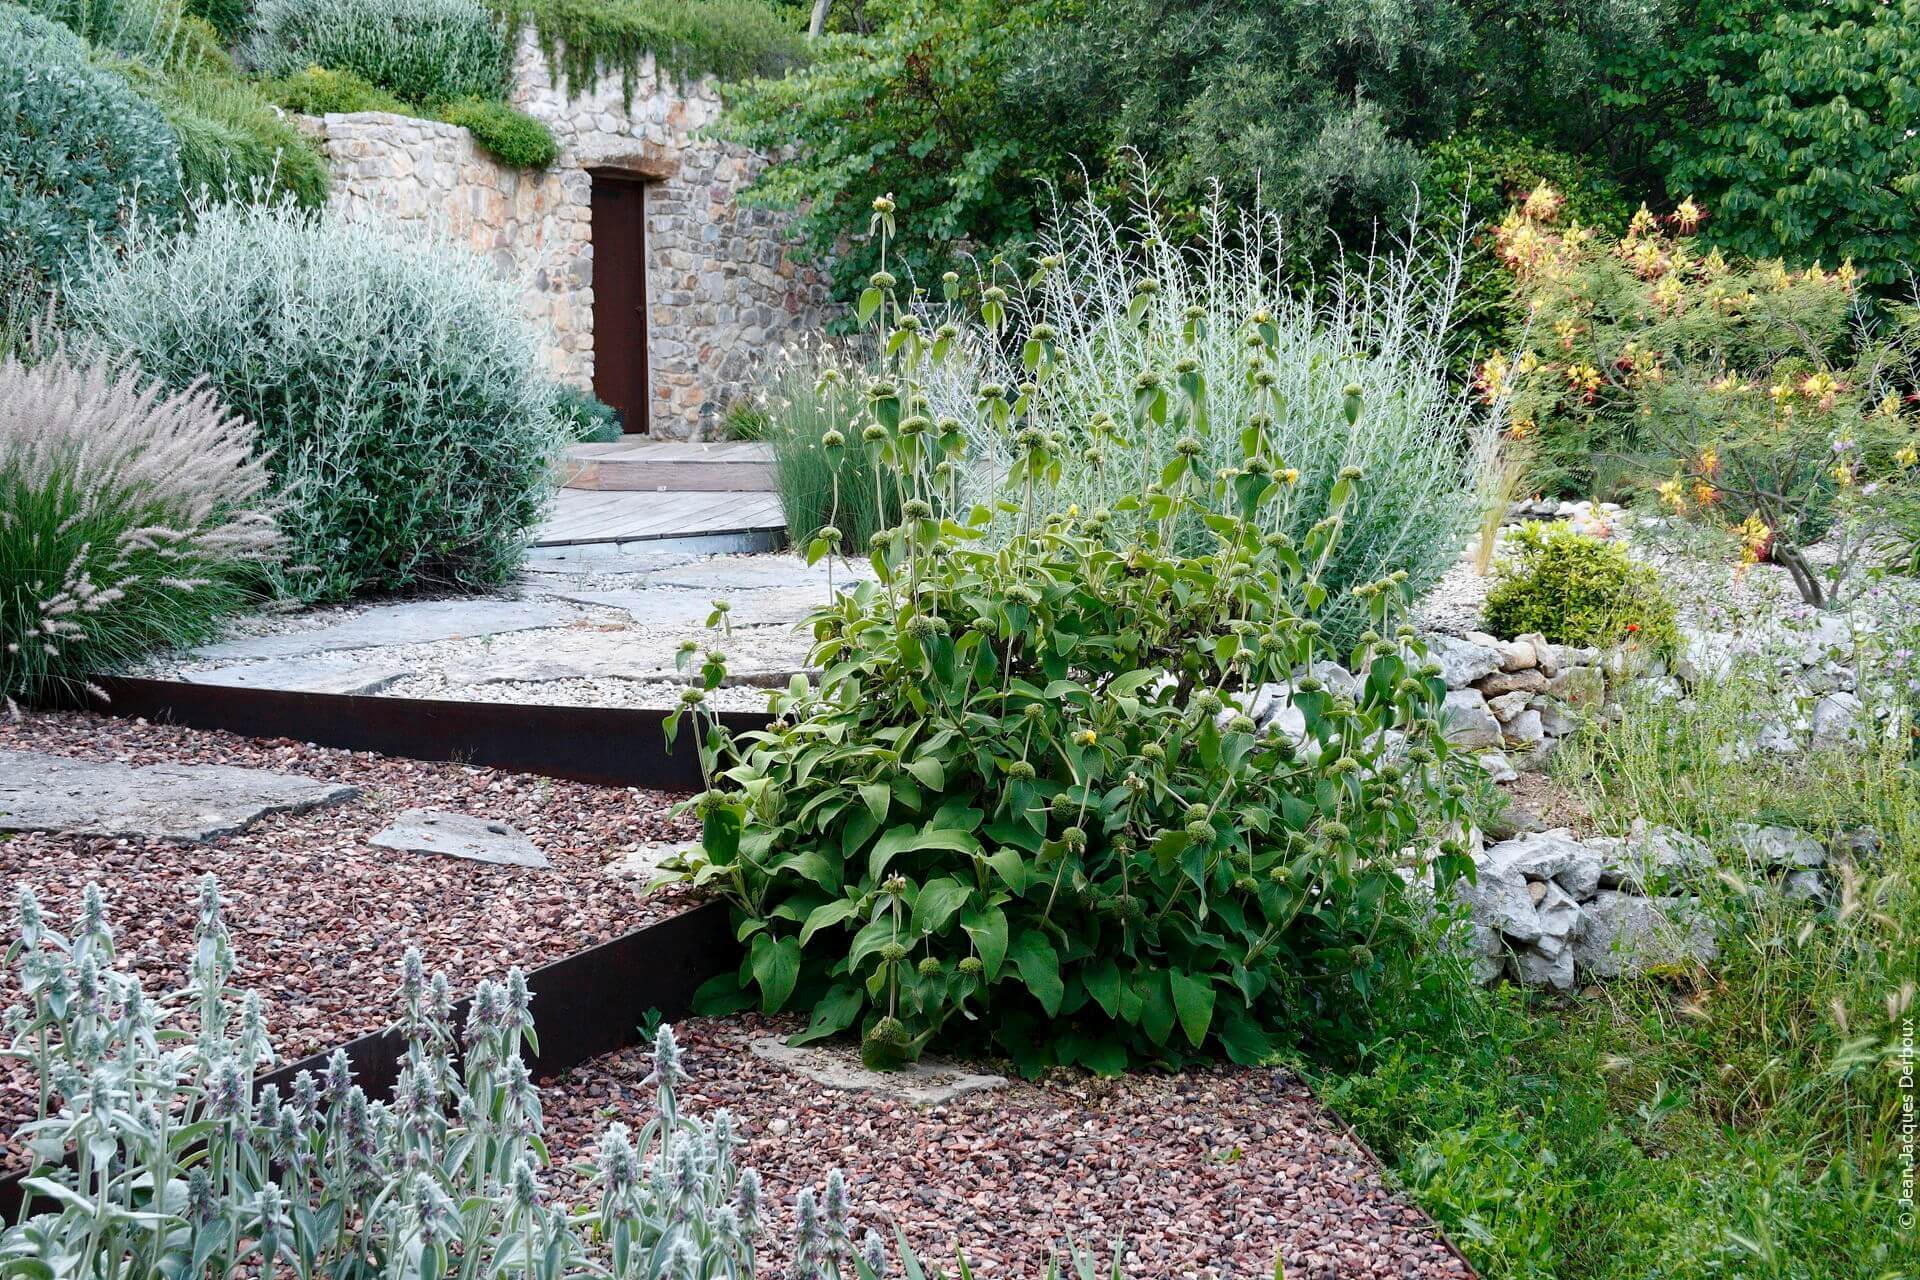 Jardin sans arrosage, ambiance naturelle, muret en pierre, terrasse en bois, grande dalle naturelle, gravier, contre marche en métal brut, plantes de méditerranée.